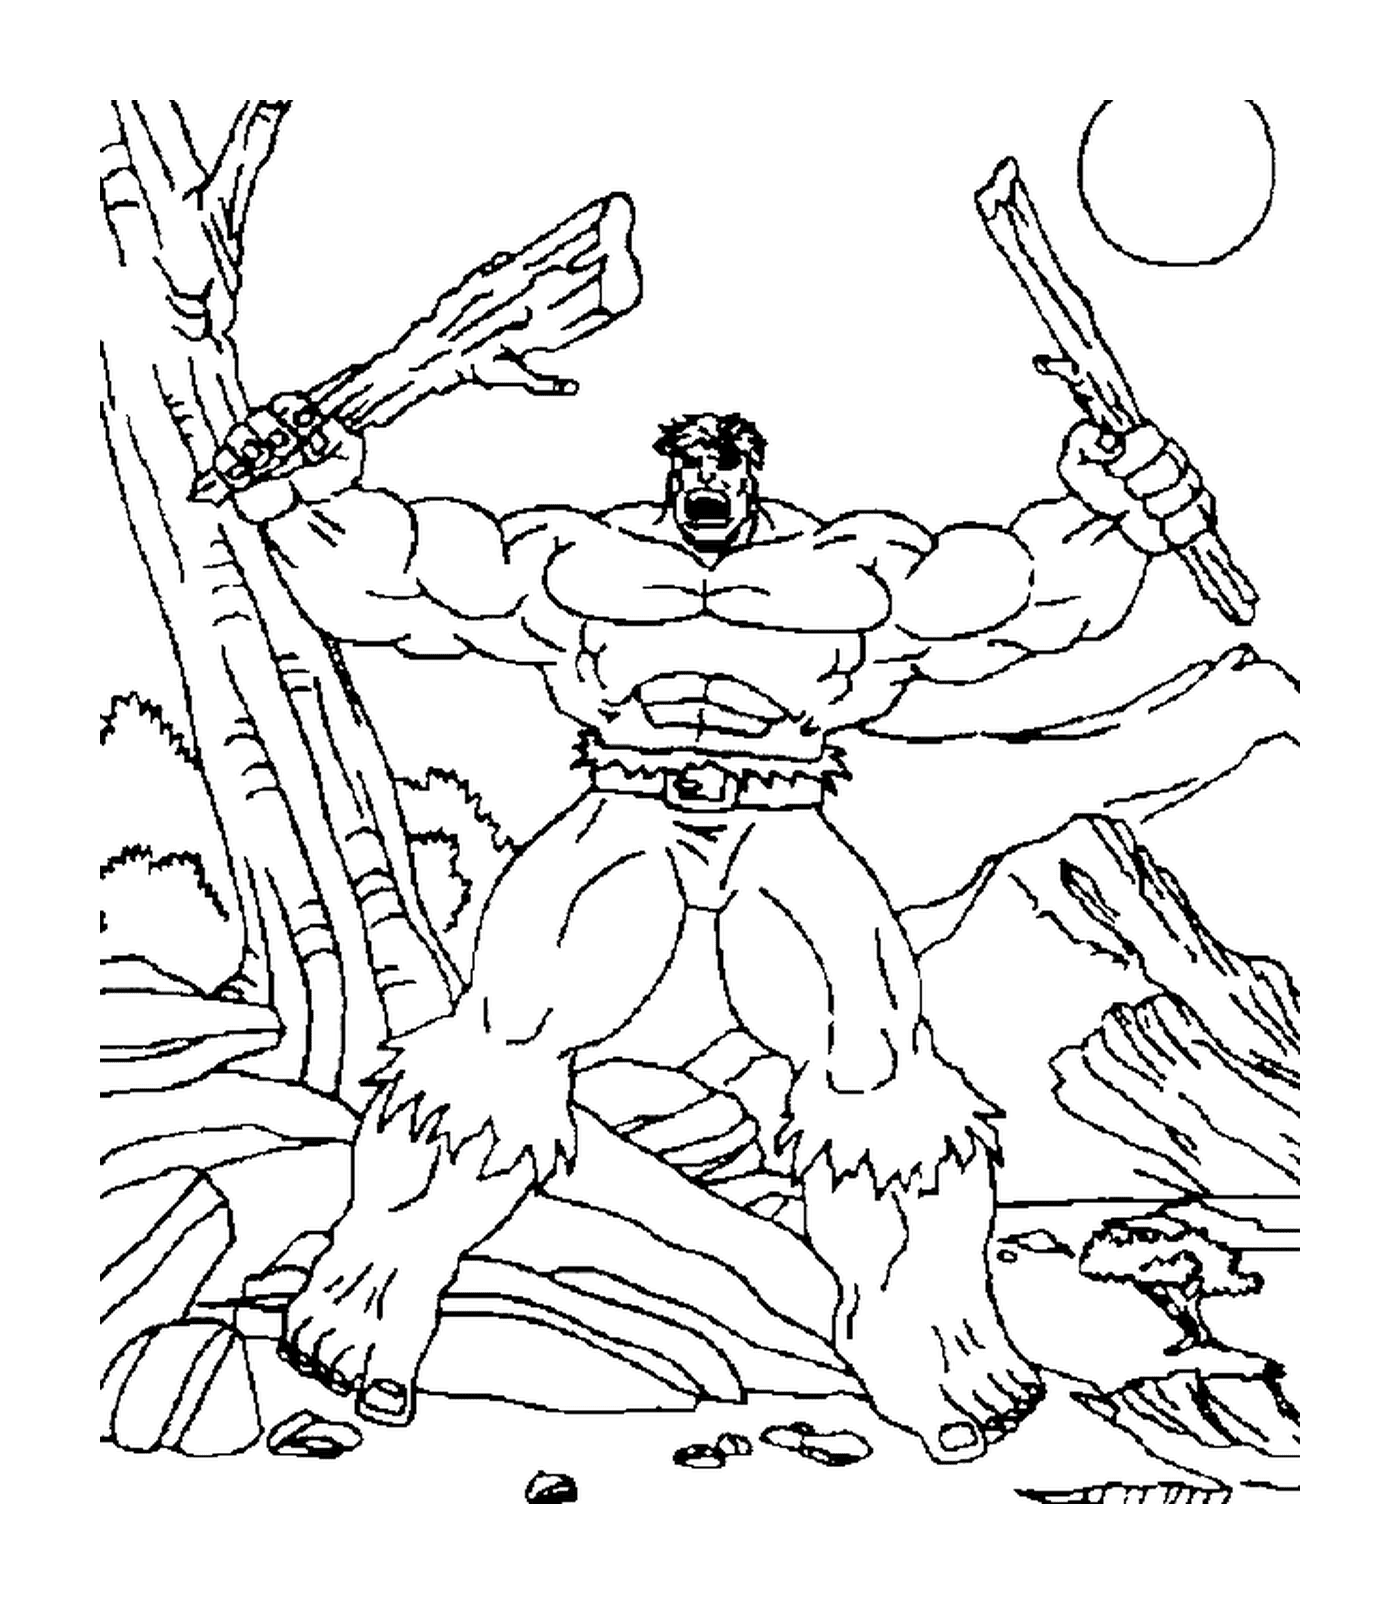  Hulk bricht einen Zweig 